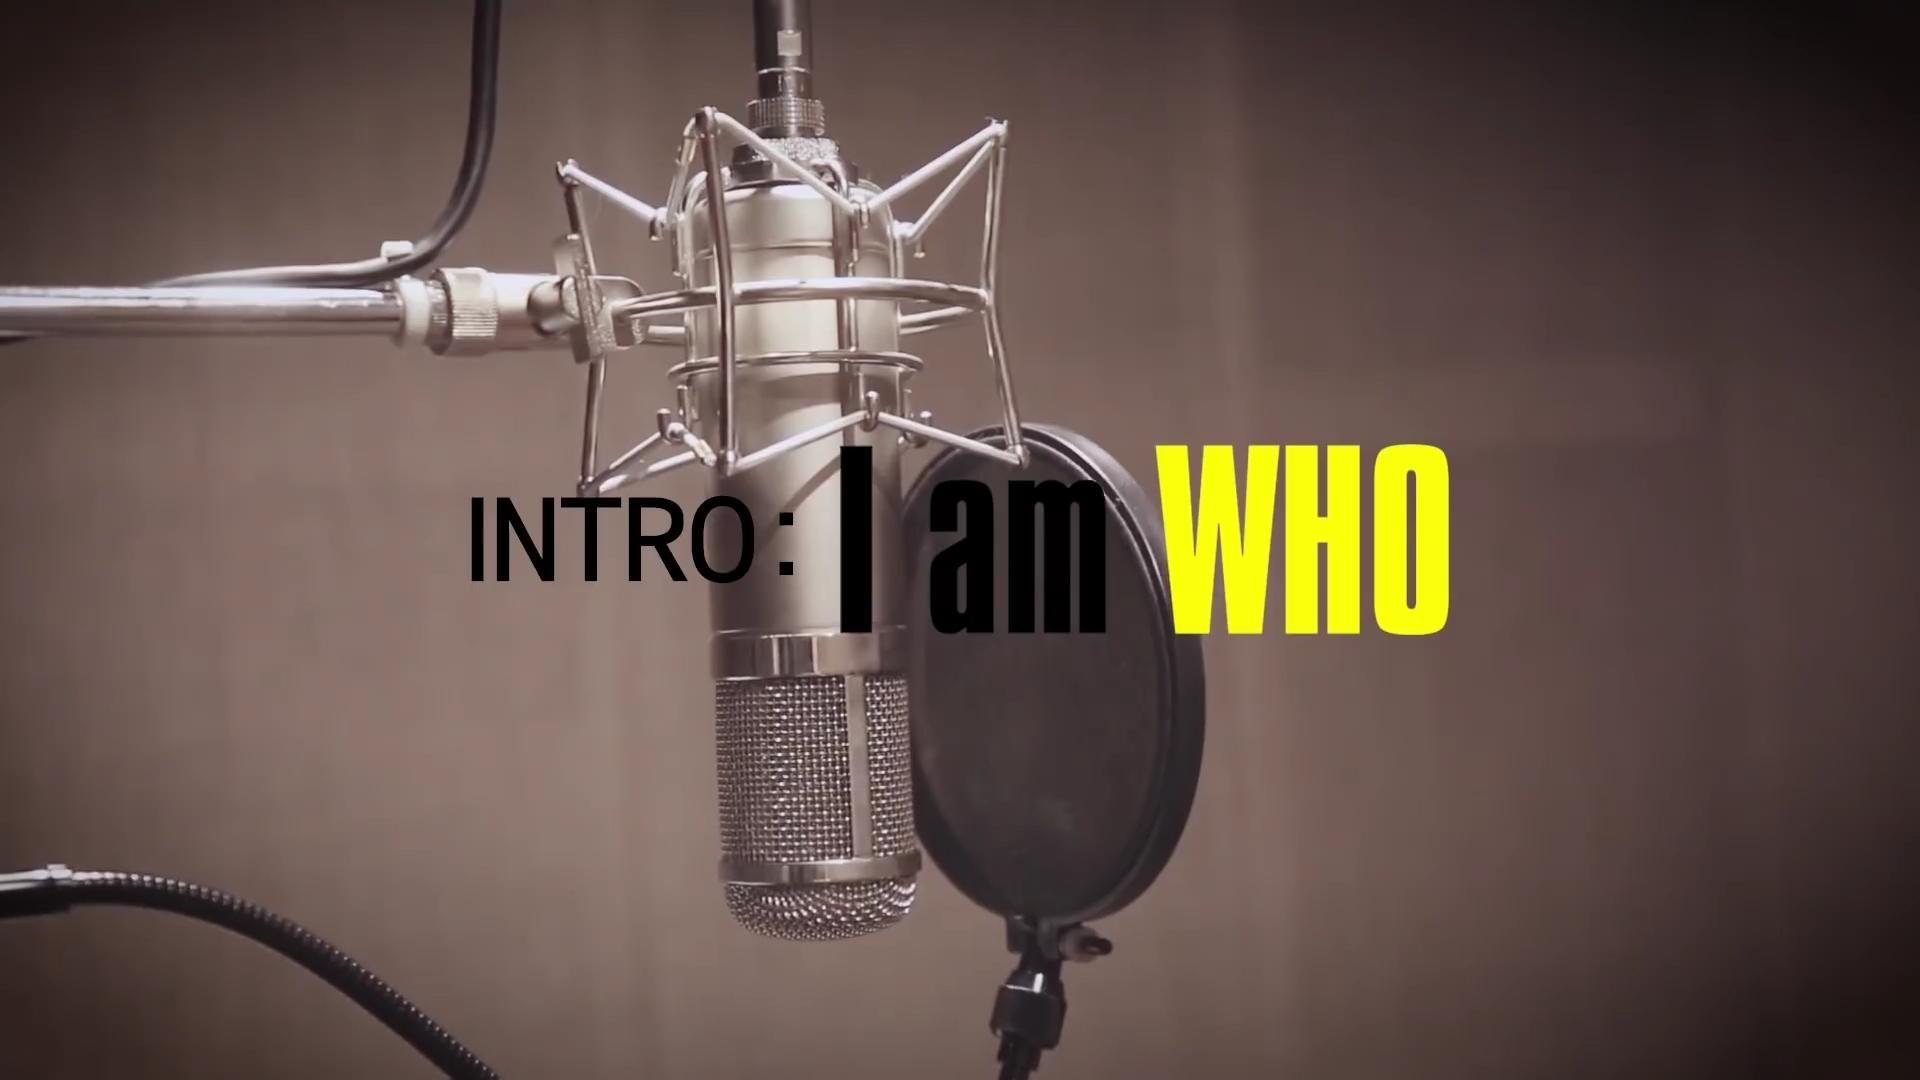 Stray Kids: INTRO: I am WHO